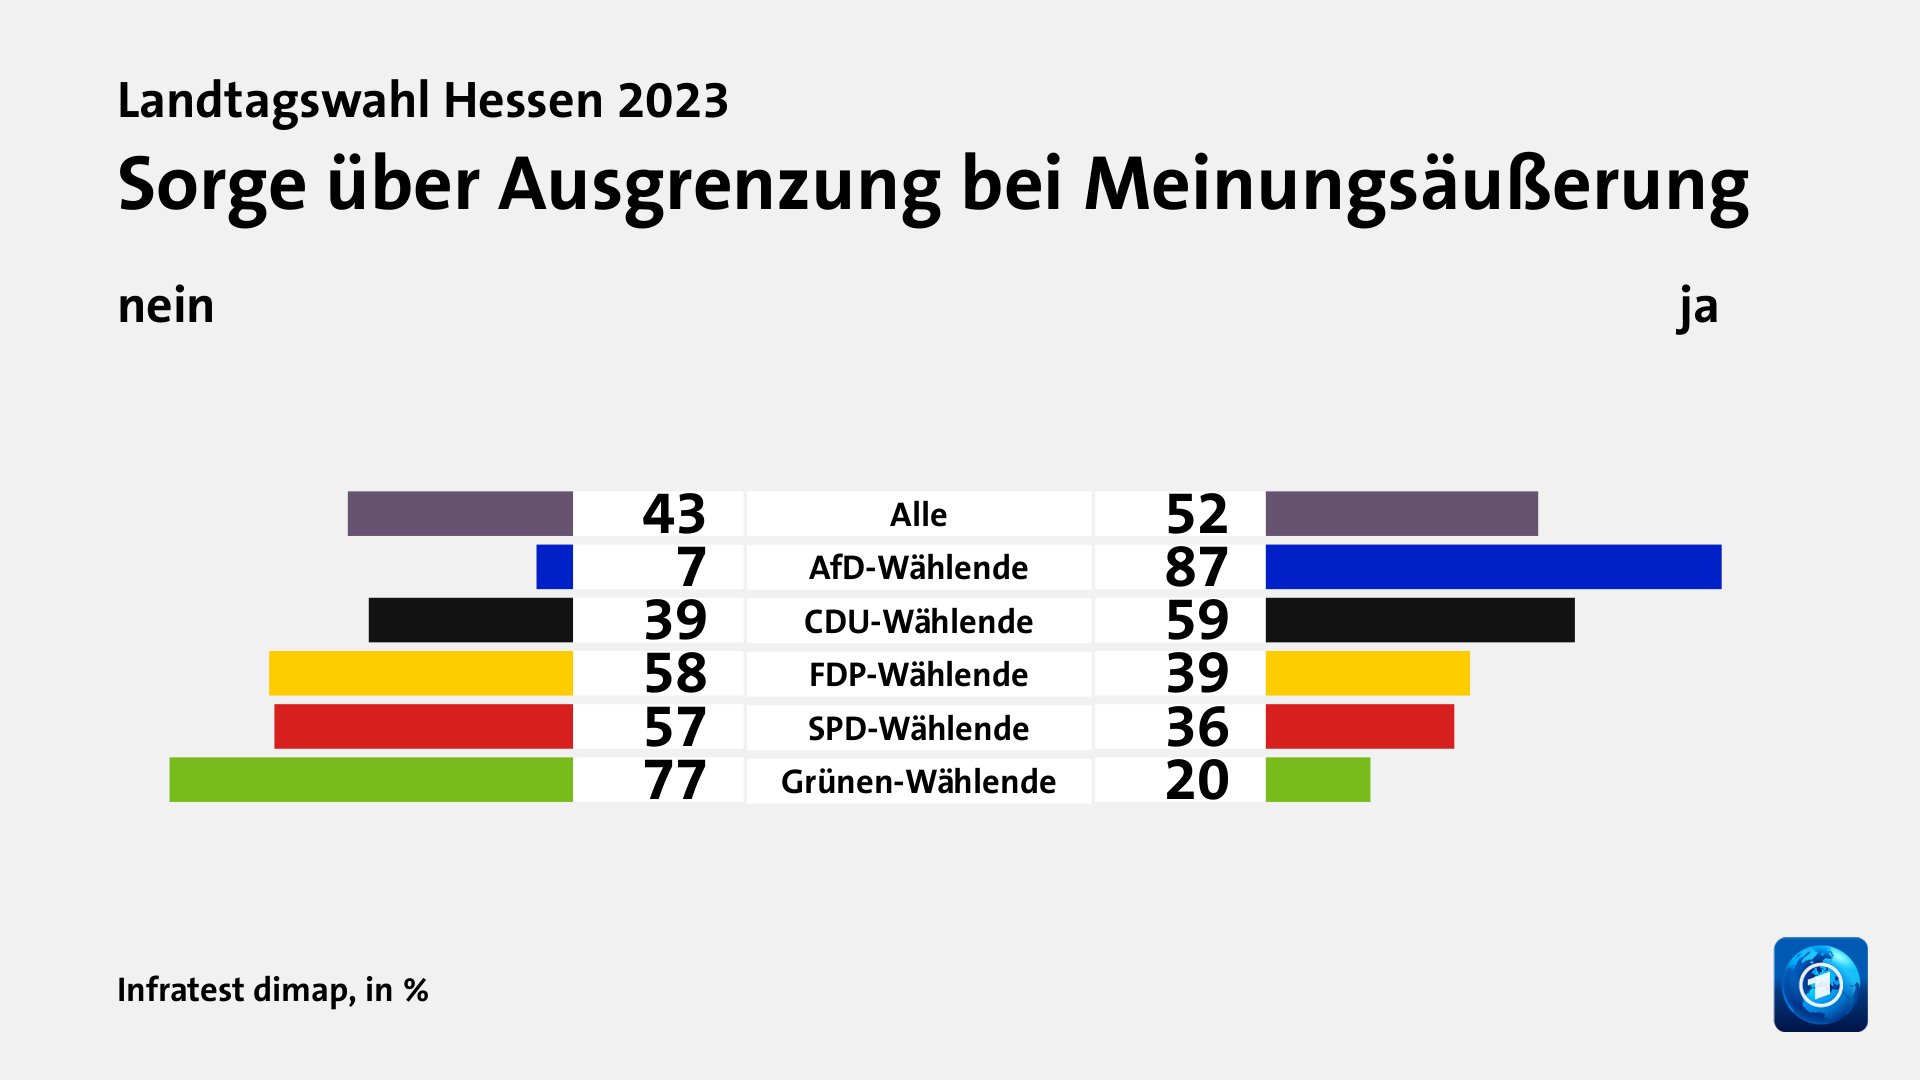 Sorge über Ausgrenzung bei Meinungsäußerung (in %) Alle: nein 43, ja 52; AfD-Wählende: nein 7, ja 87; CDU-Wählende: nein 39, ja 59; FDP-Wählende: nein 58, ja 39; SPD-Wählende: nein 57, ja 36; Grünen-Wählende: nein 77, ja 20; Quelle: Infratest dimap